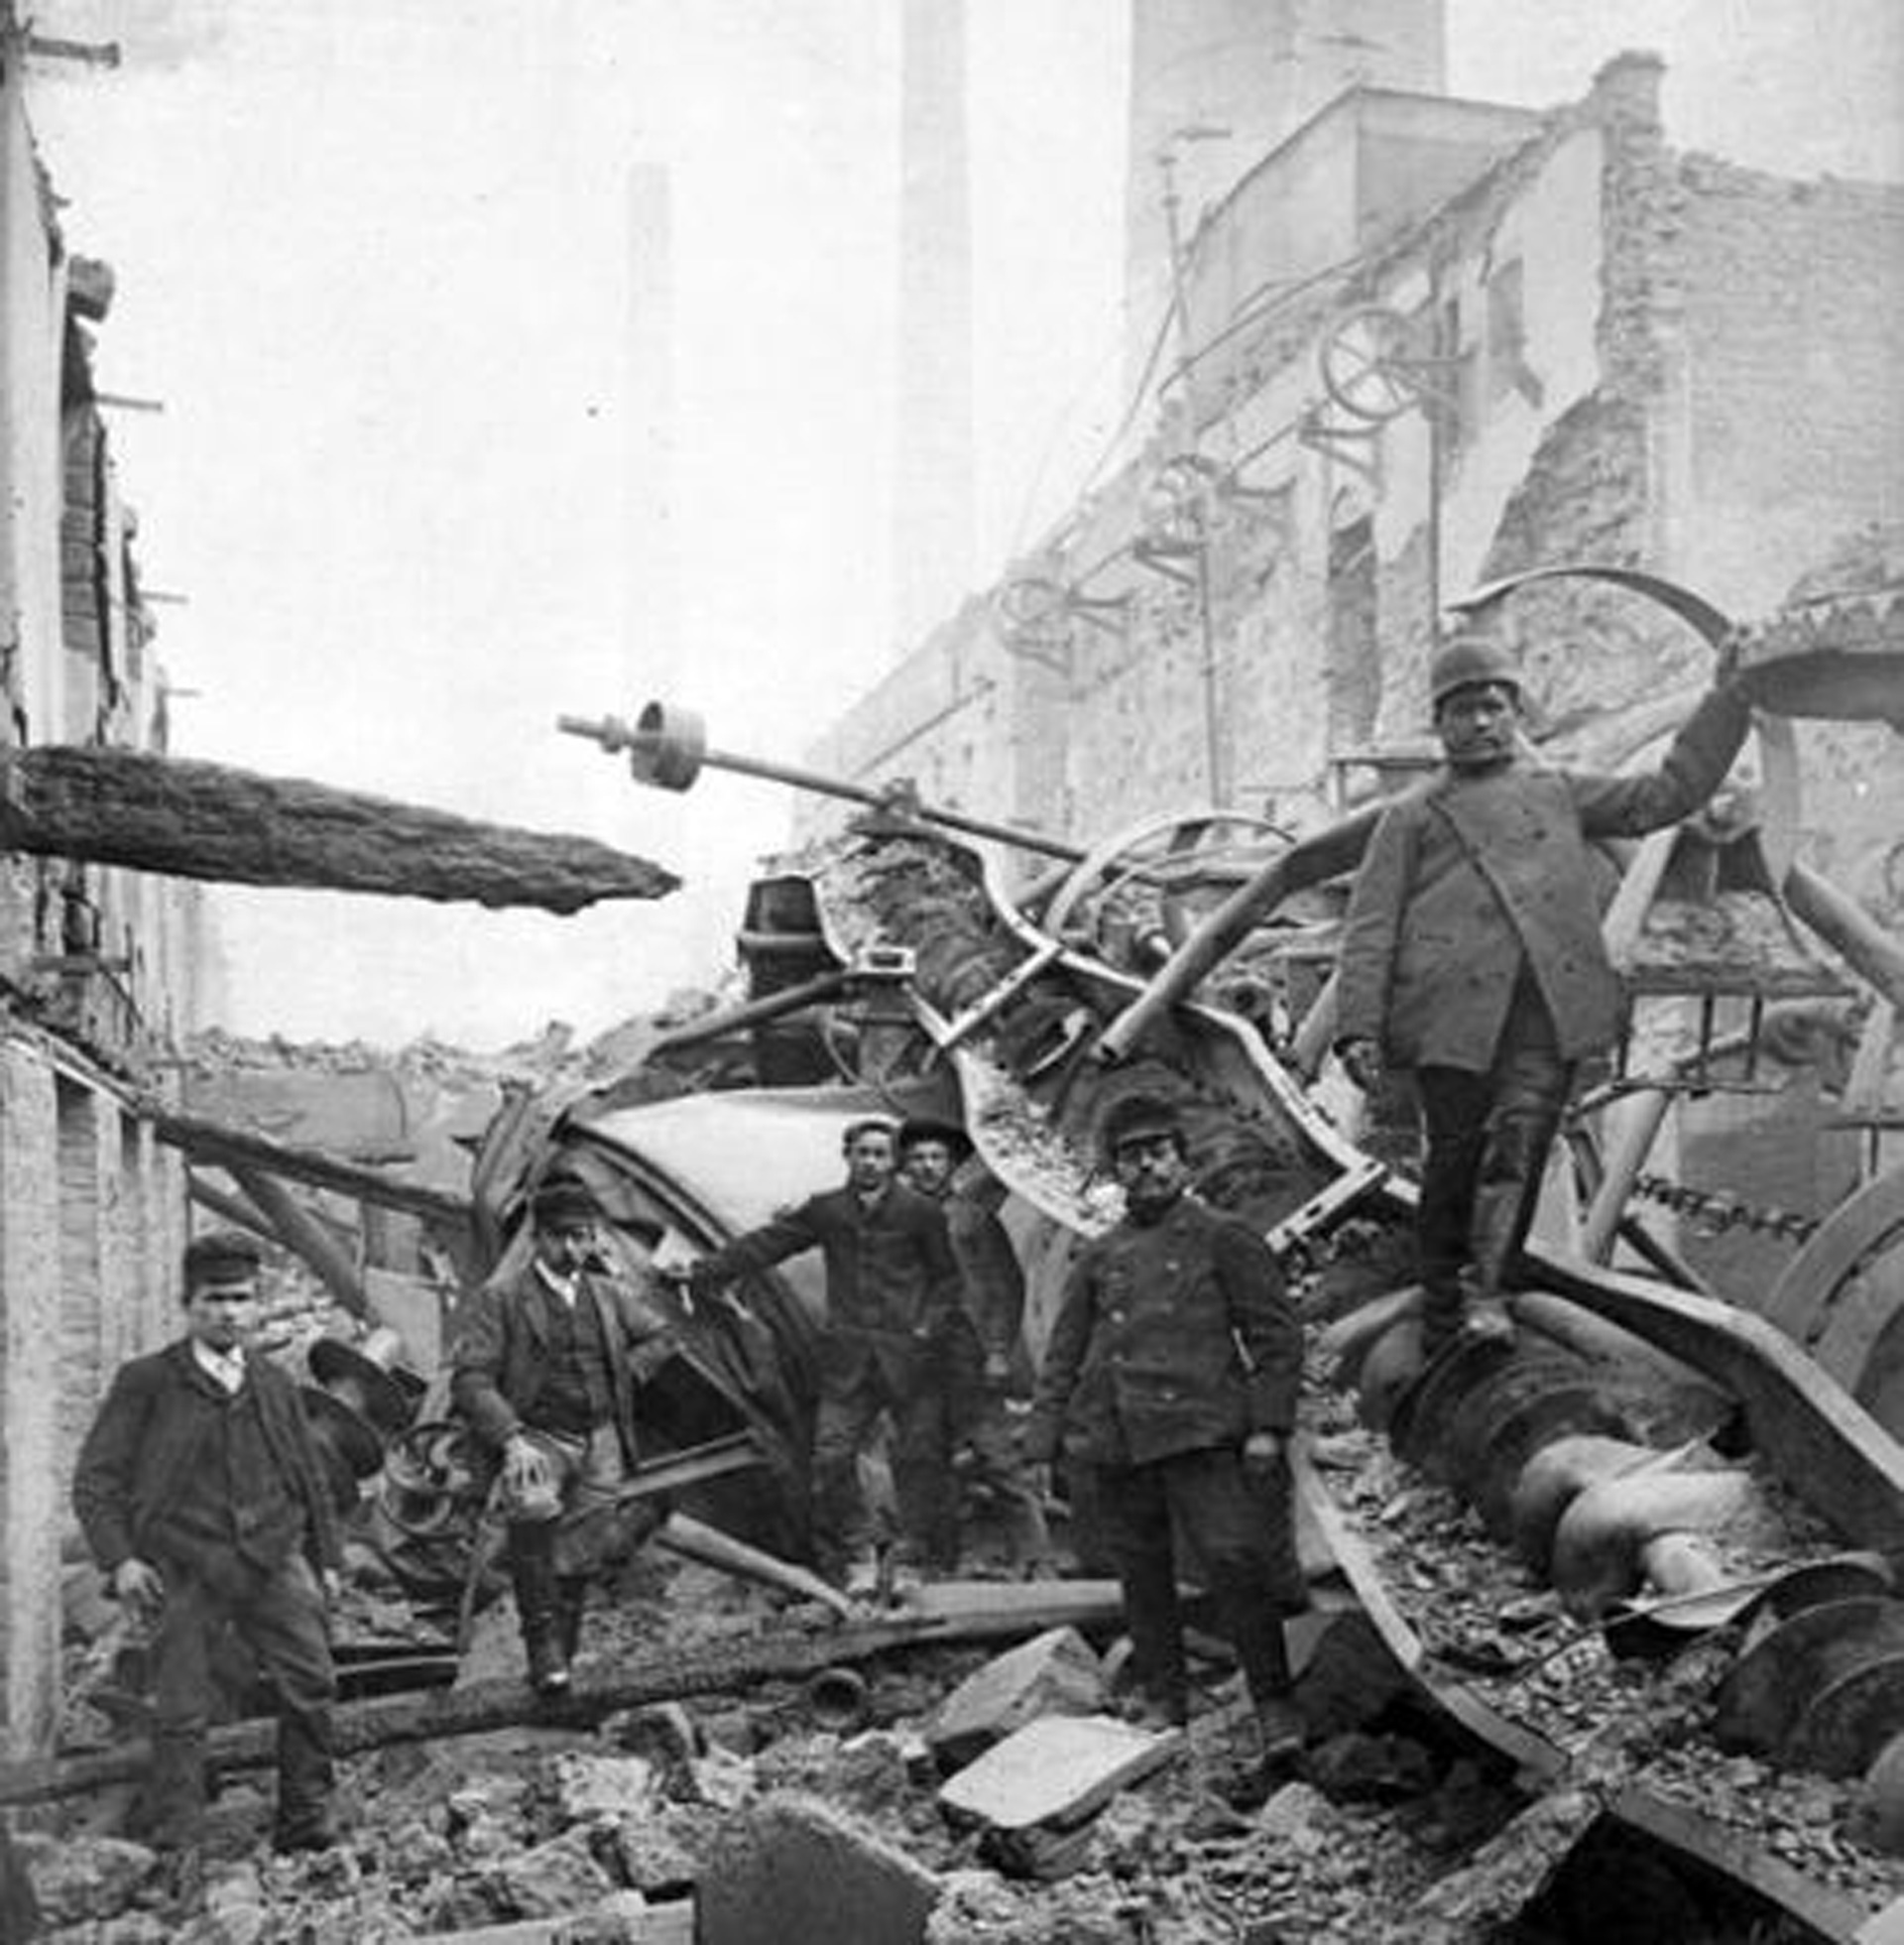 Schwarz-weiß-Bild von Männern, die auf Trümmern stehen